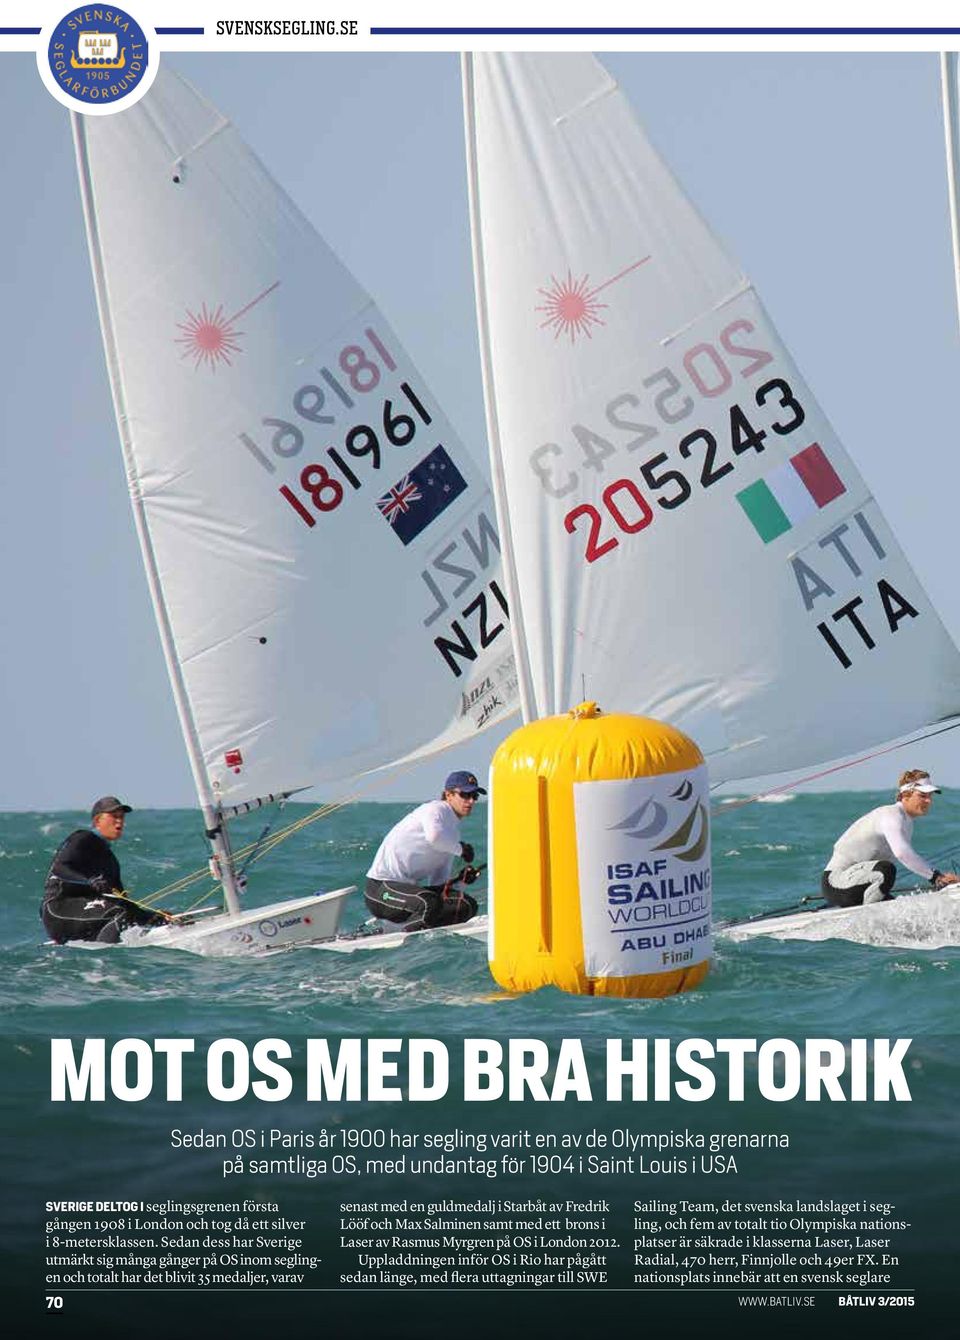 Sedan dess har Sverige utmärkt sig många gånger på OS inom seglingen och totalt har det blivit 35 medaljer, varav 70 senast med en guldmedalj i Starbåt av Fredrik Lööf och Max Salminen samt med ett